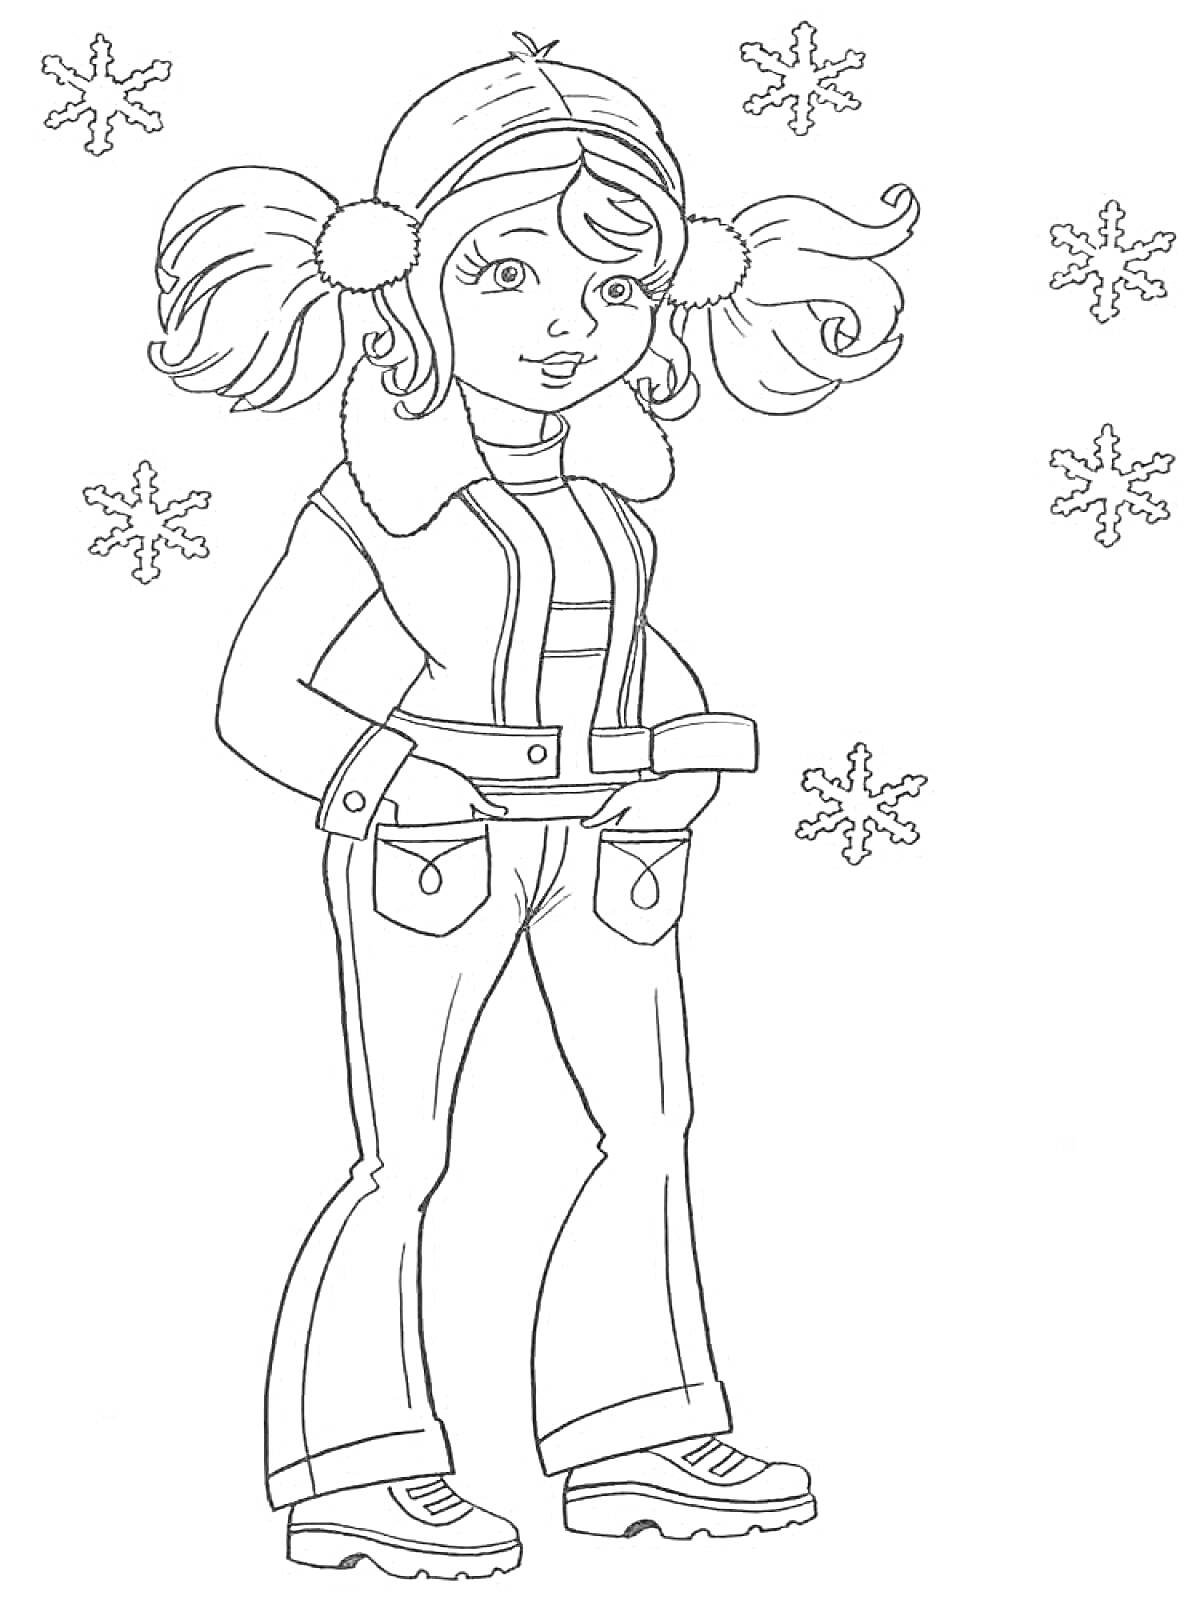 Раскраска Девочка в зимней одежде с пятью снежинками вокруг